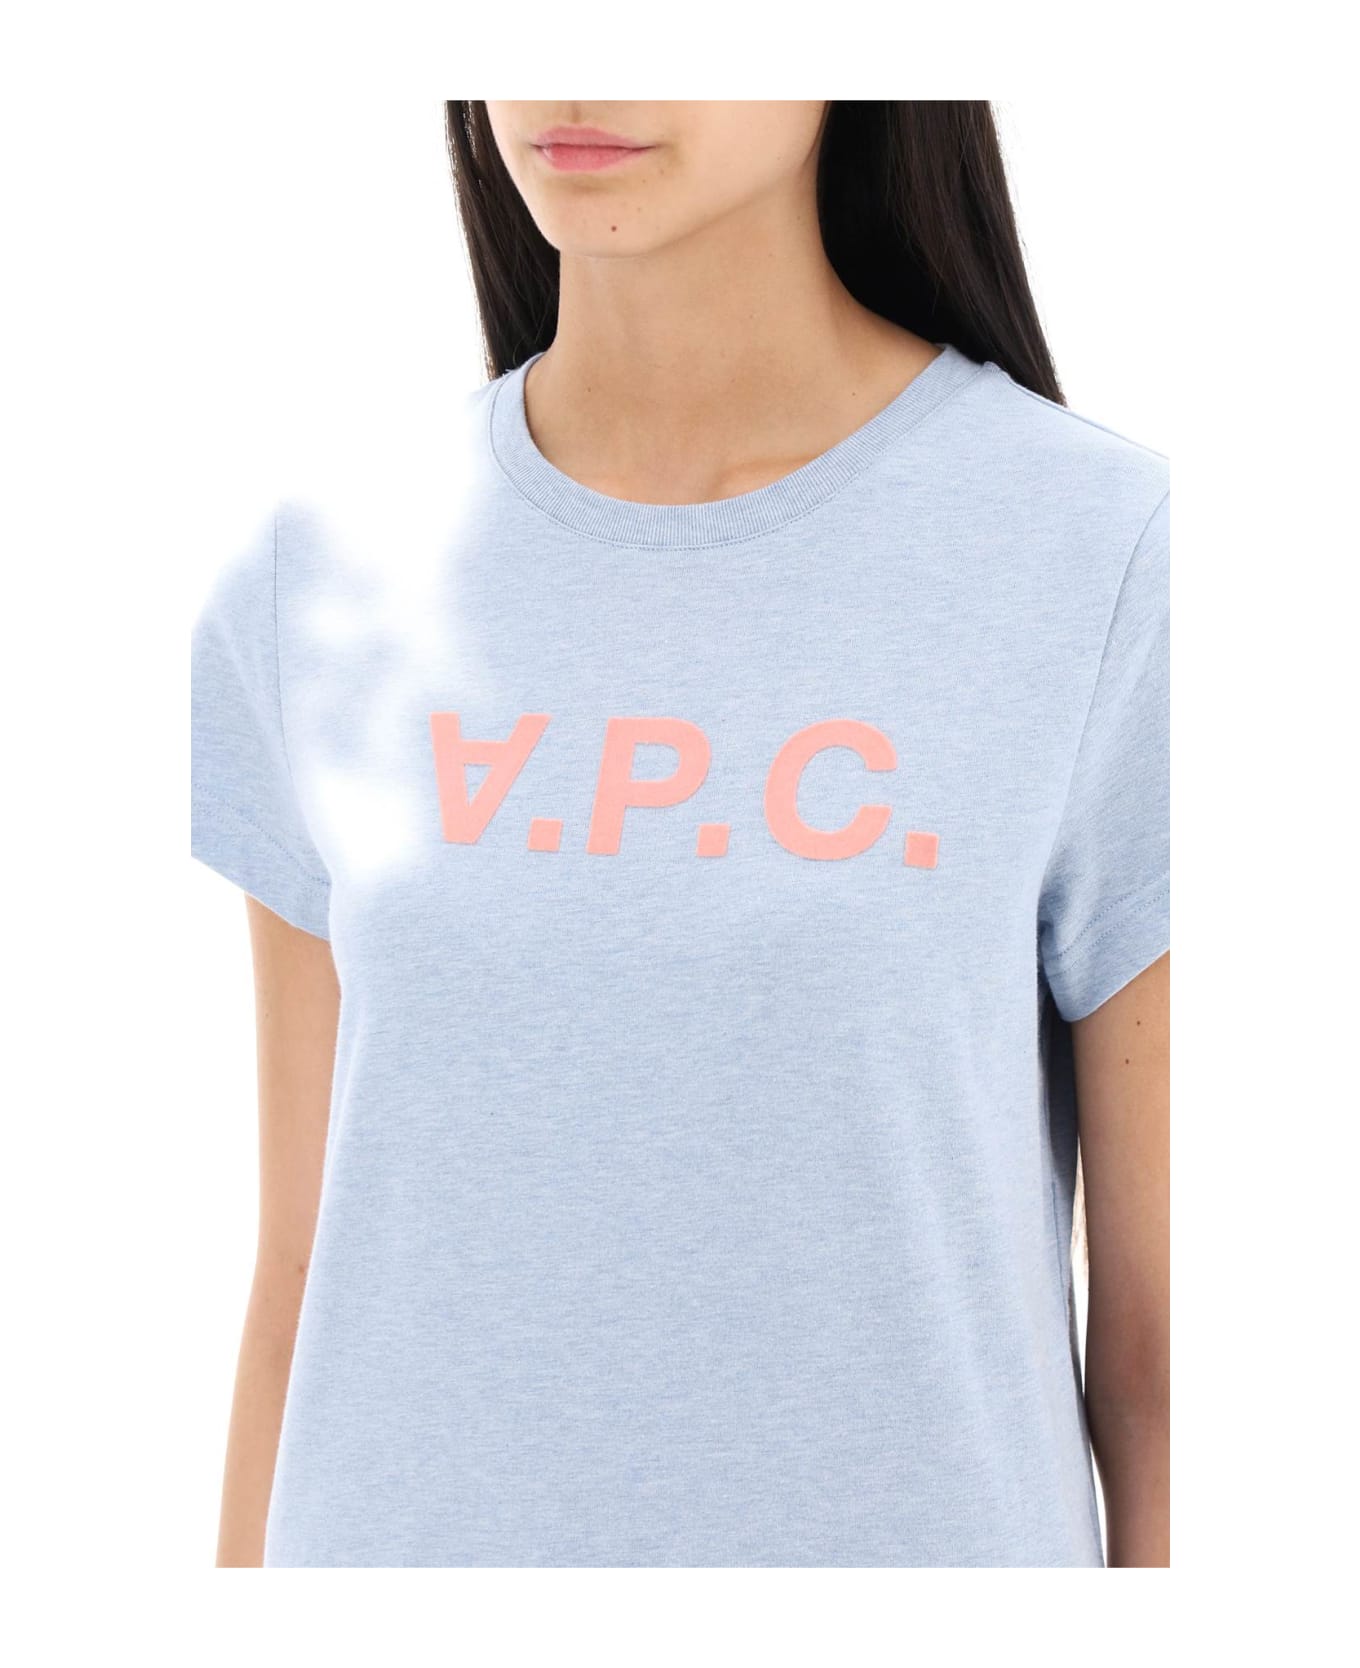 A.P.C. V.p.c. Logo T-shirt - Light blue